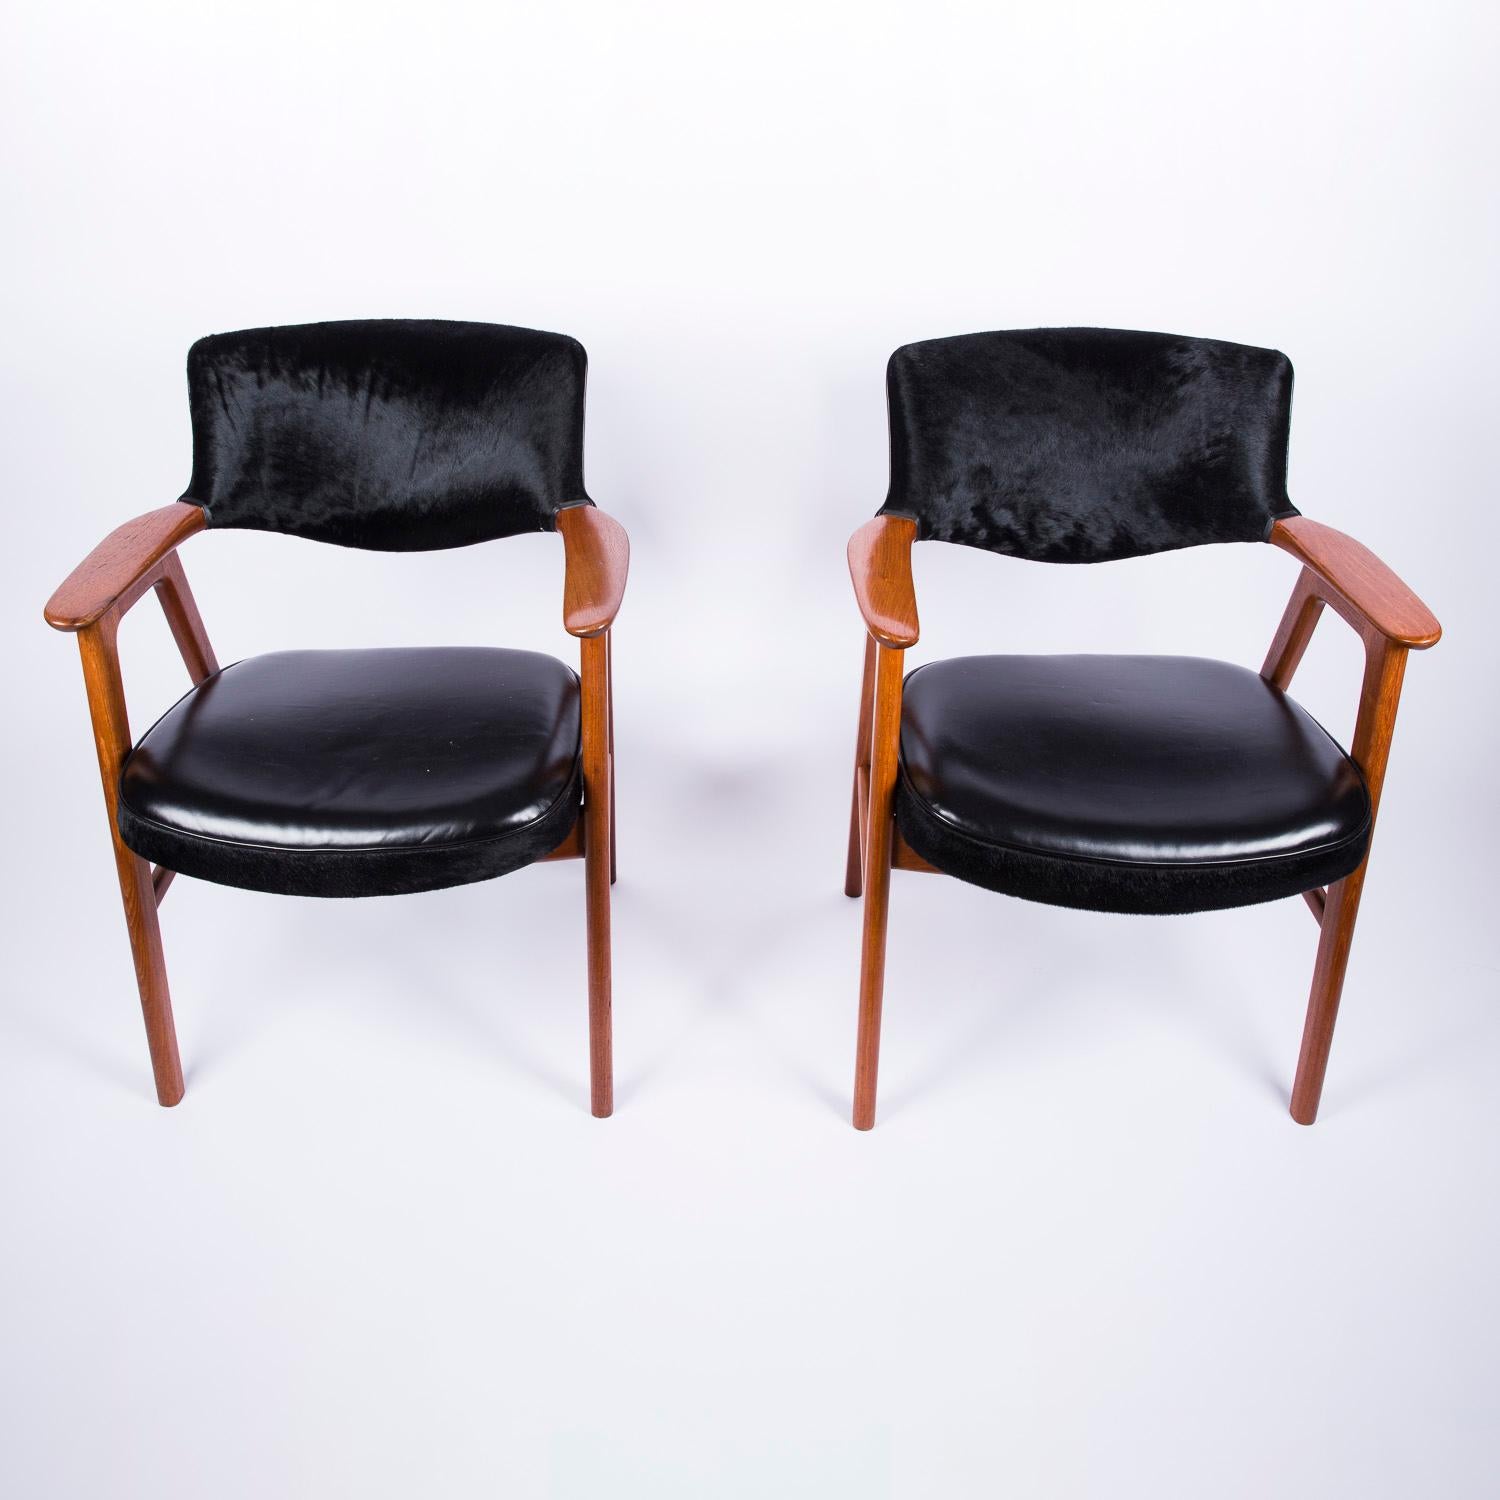 Ein Paar Sessel aus den 1960er Jahren von Erik Kierkegaard für Høng Stolefabrik aus Dänemark.

Gepolstert mit schwarzen Ledersitzen und Kunstfellrücken.